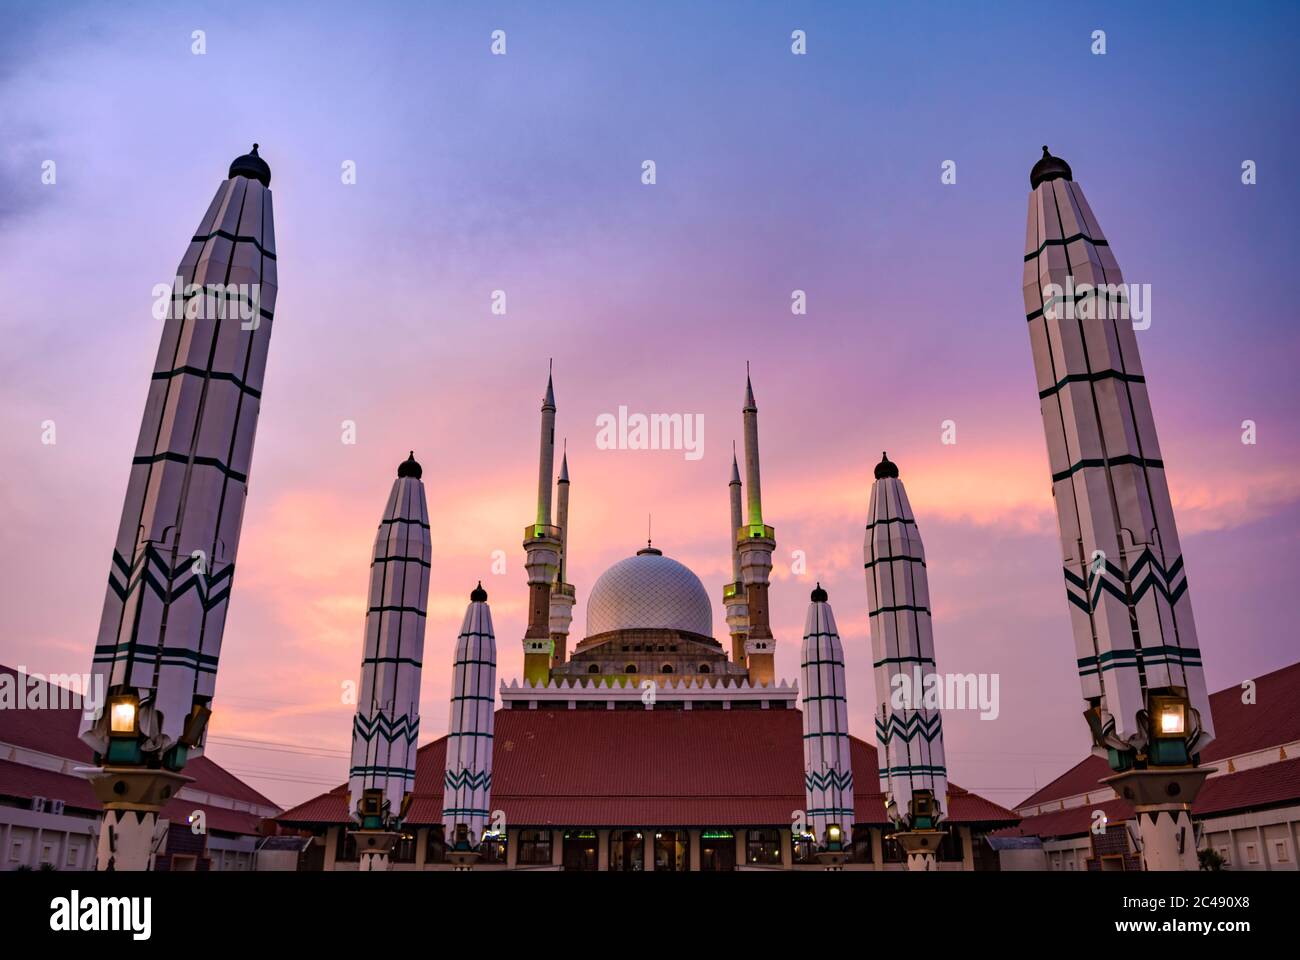 Semarang, Indonesia - CIRCA Nov 2019: The exterior of Great Mosque of Central Java (Masjid Agung Jawa Tengah) at sunset. Stock Photo